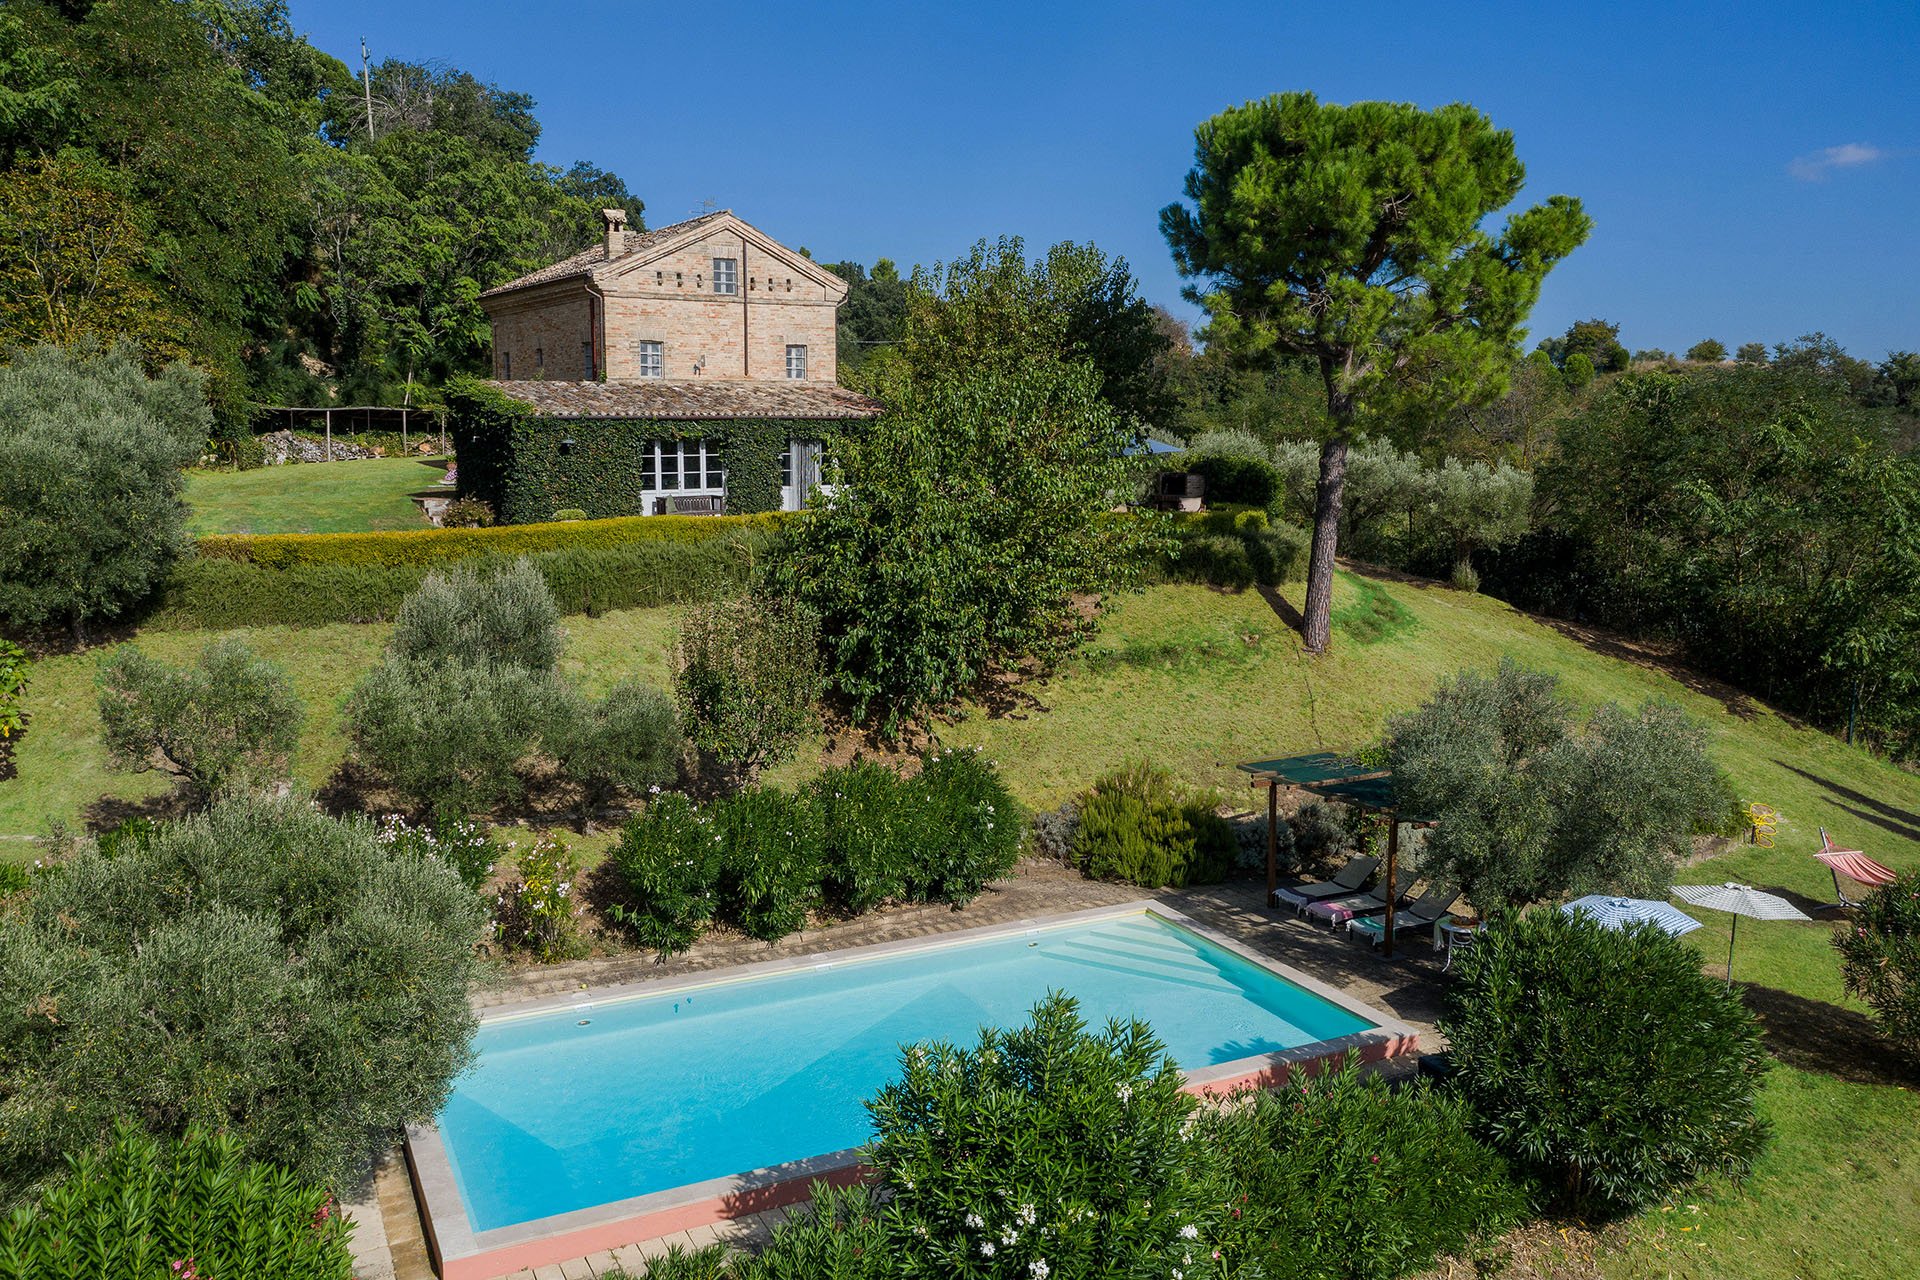 Casa Antonio - affitto villa con piscina nelle Marche